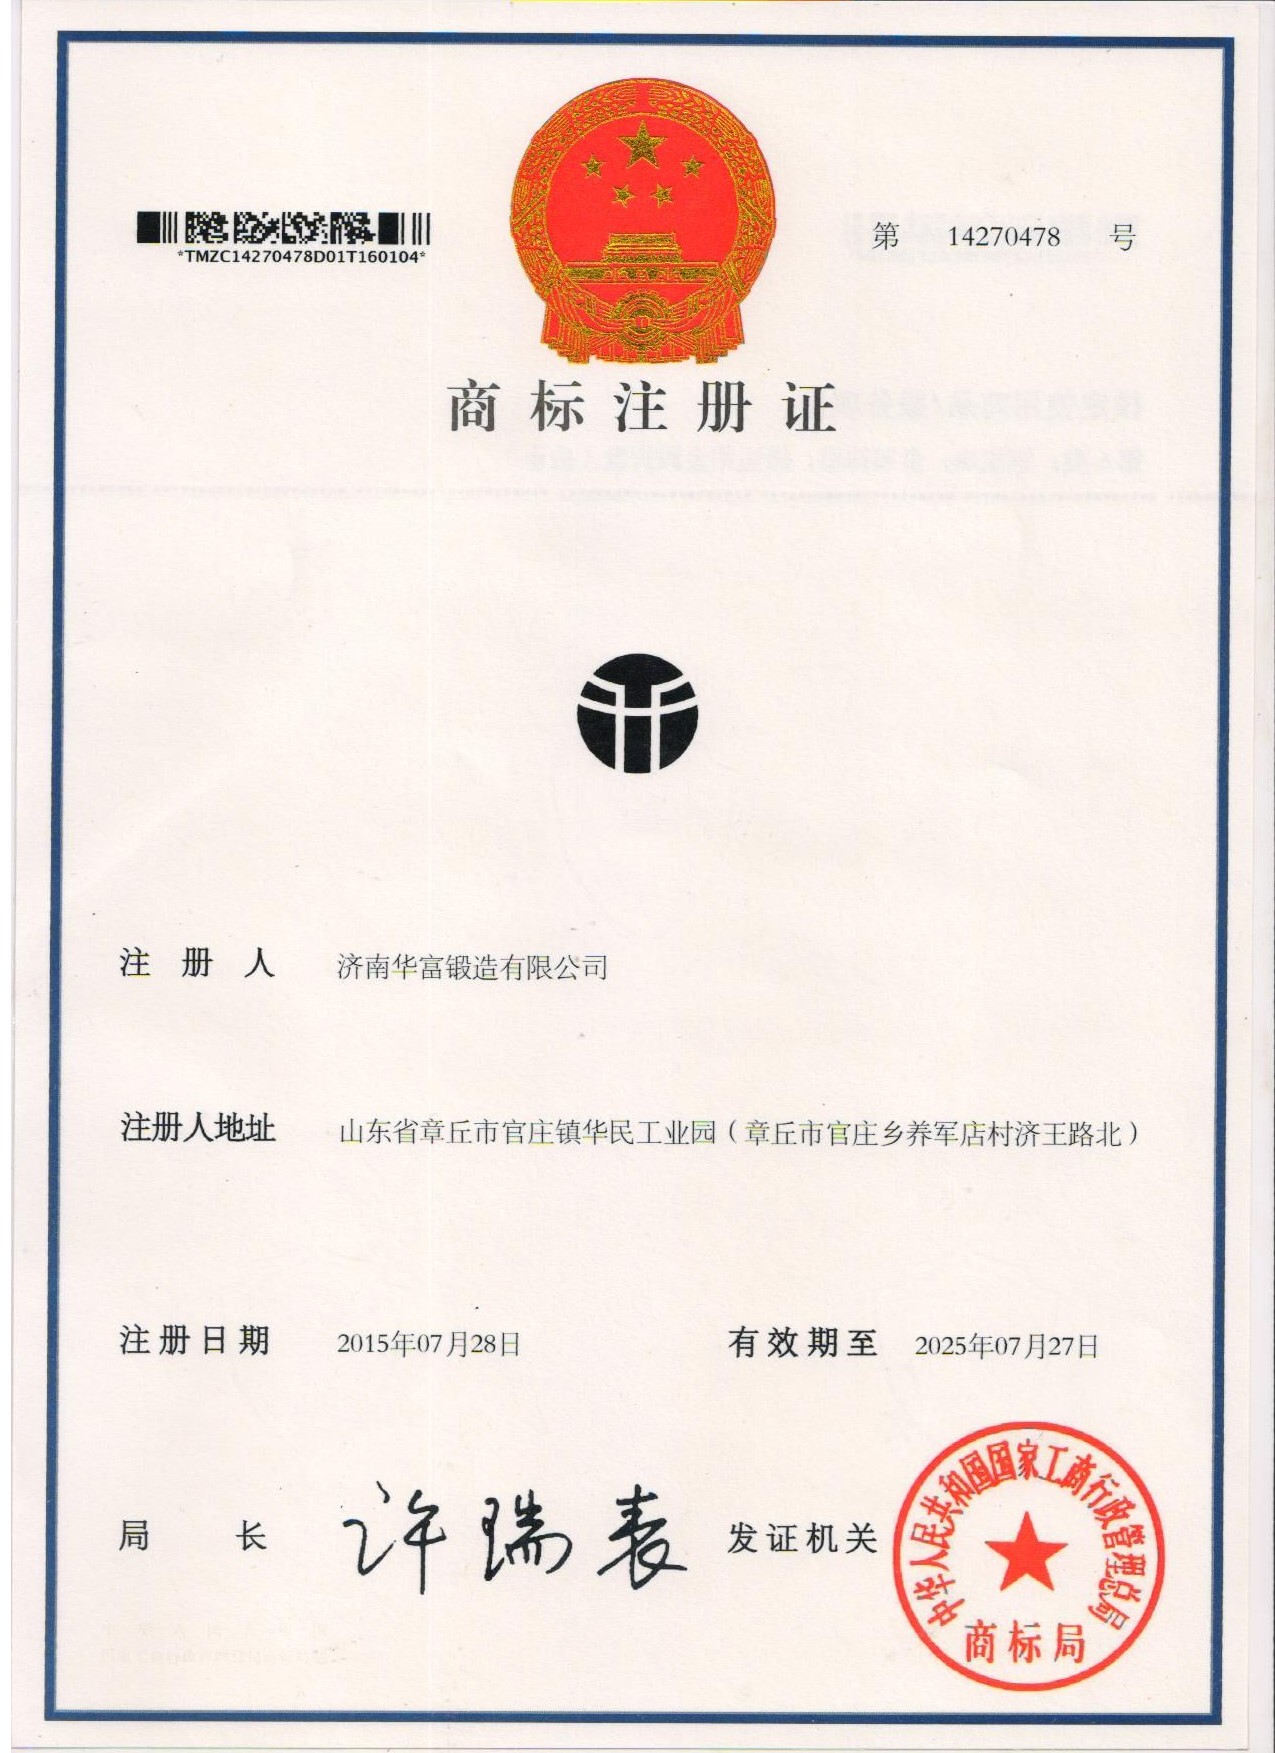 Trademark certificate